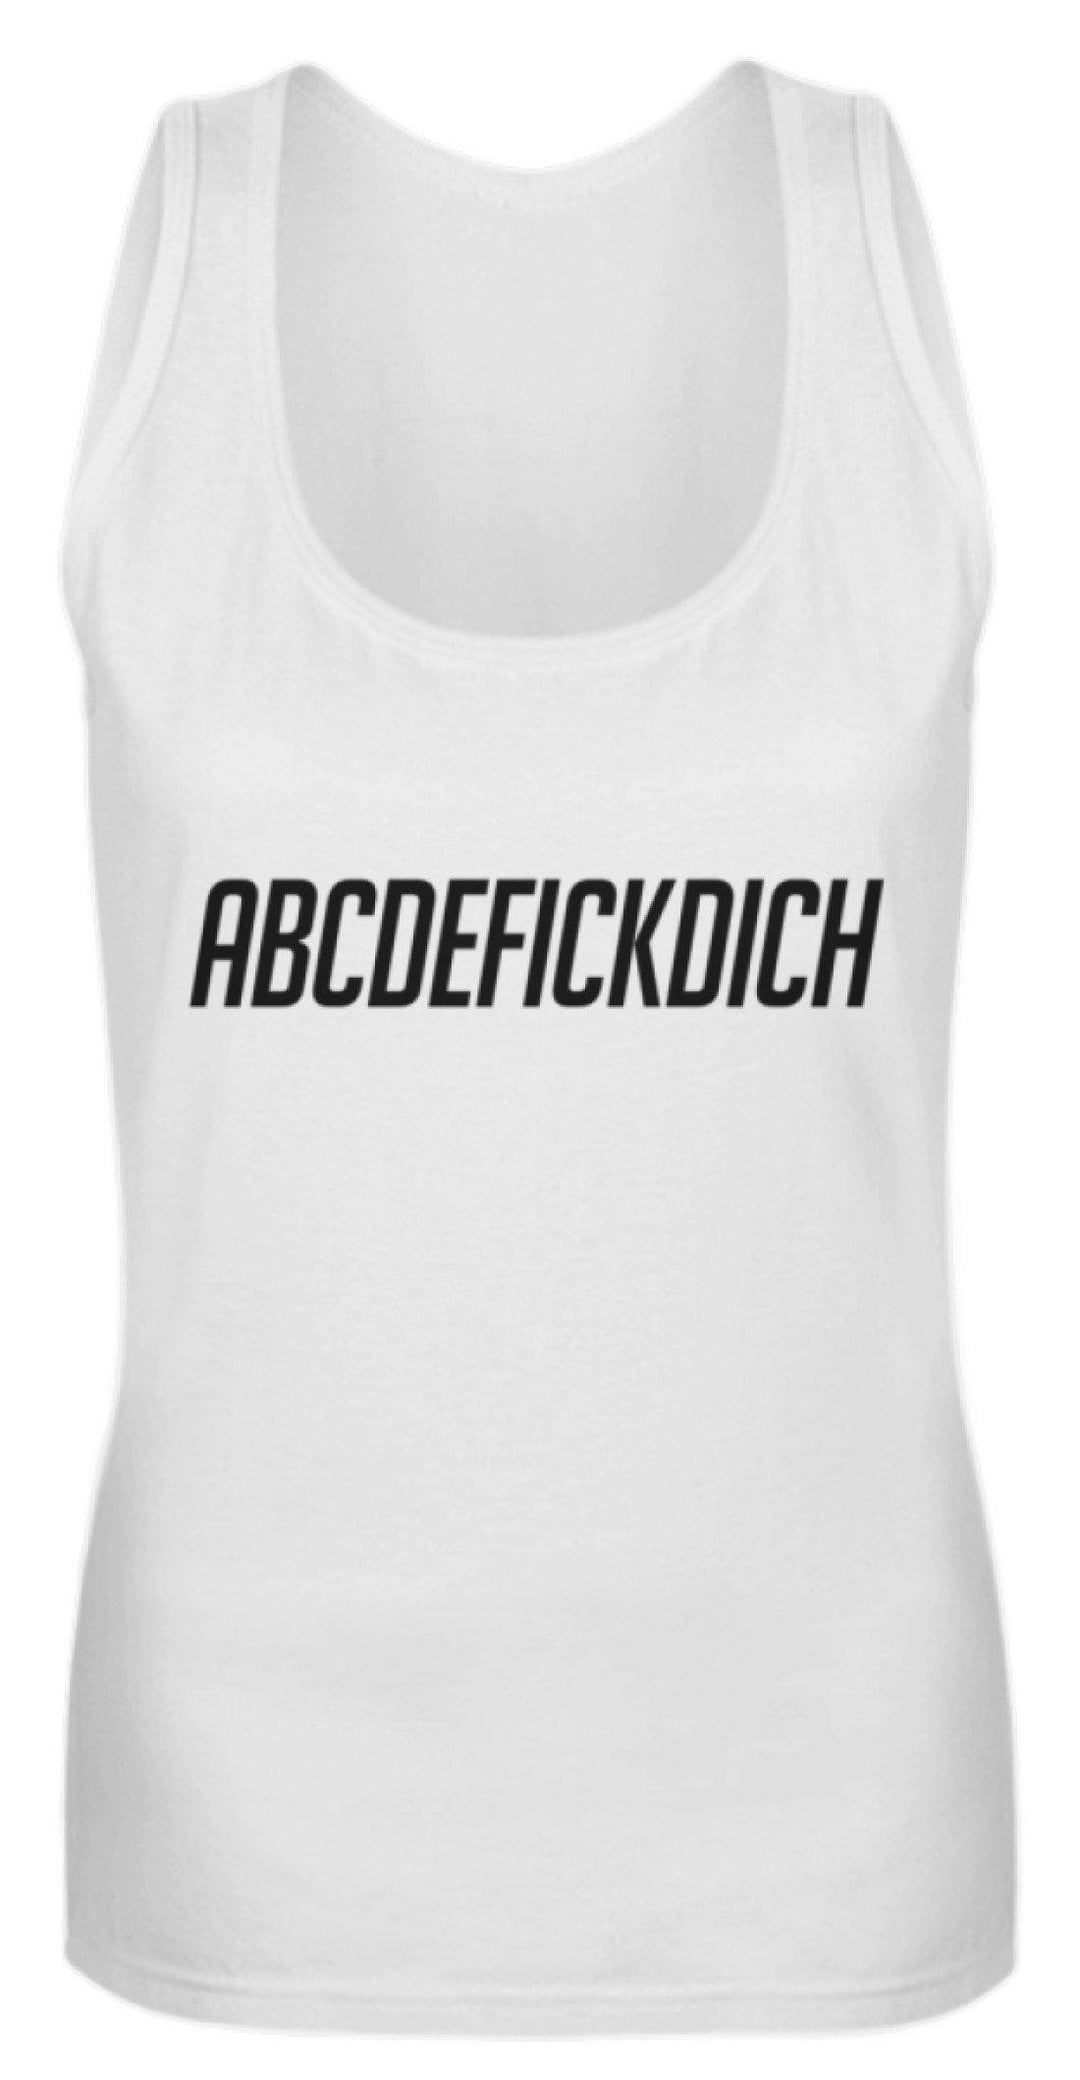 ABCDEF......... Words on Shirts  - Frauen Tanktop - Words on Shirts Sag es mit dem Mittelfinger Shirts Hoodies Sweatshirt Taschen Gymsack Spruch Sprüche Statement